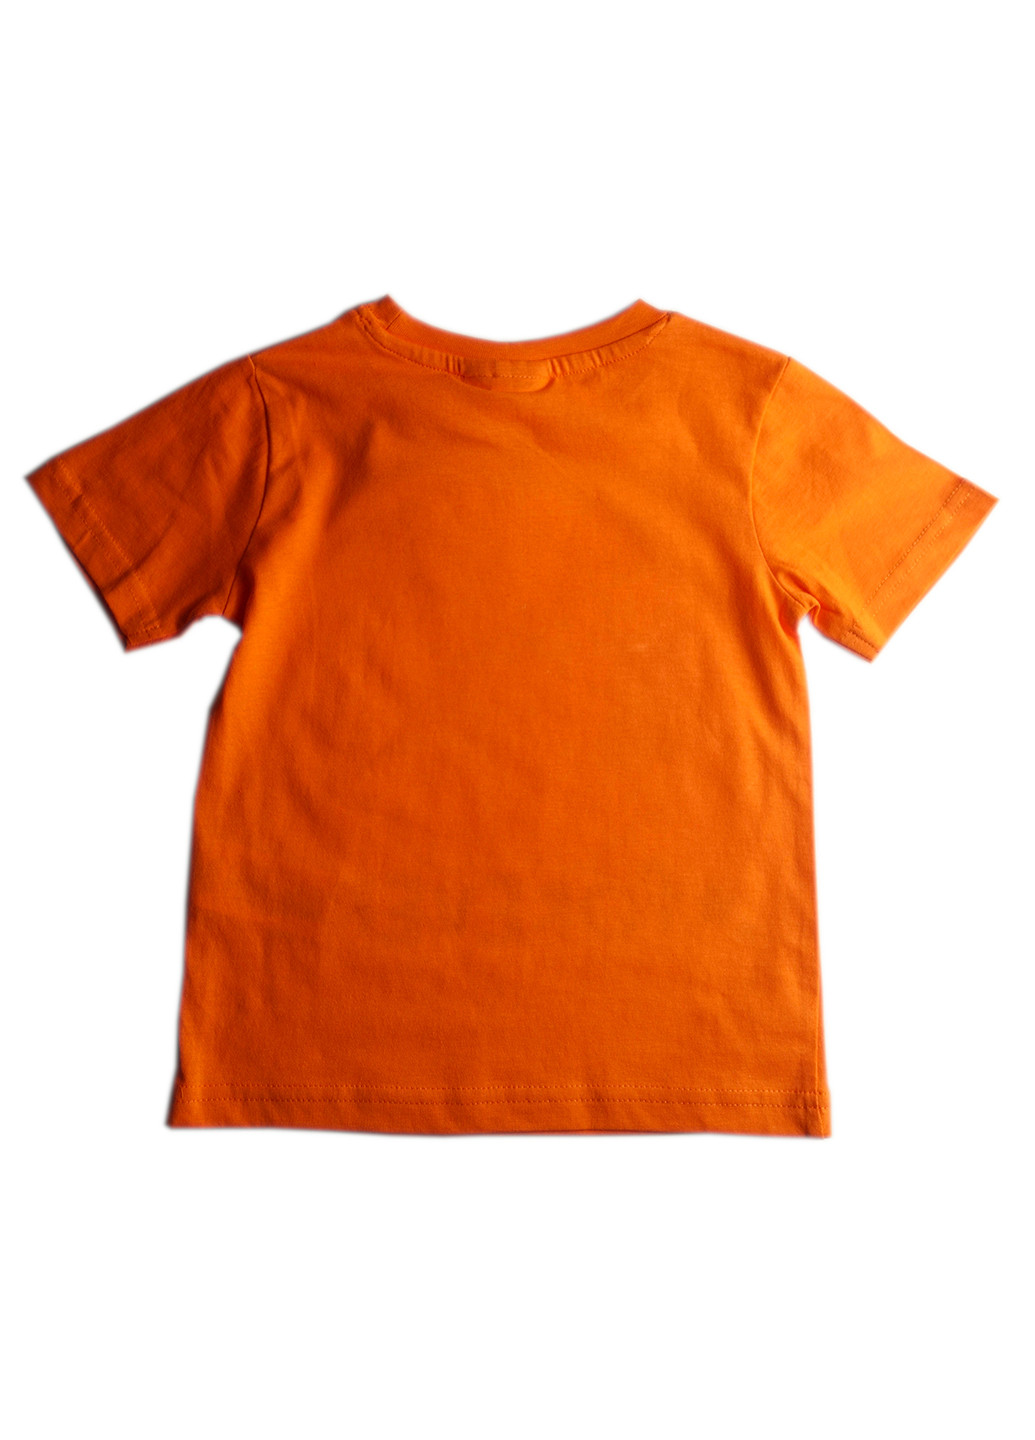 Помаранчева літня футболка з коротким рукавом Teletubbies